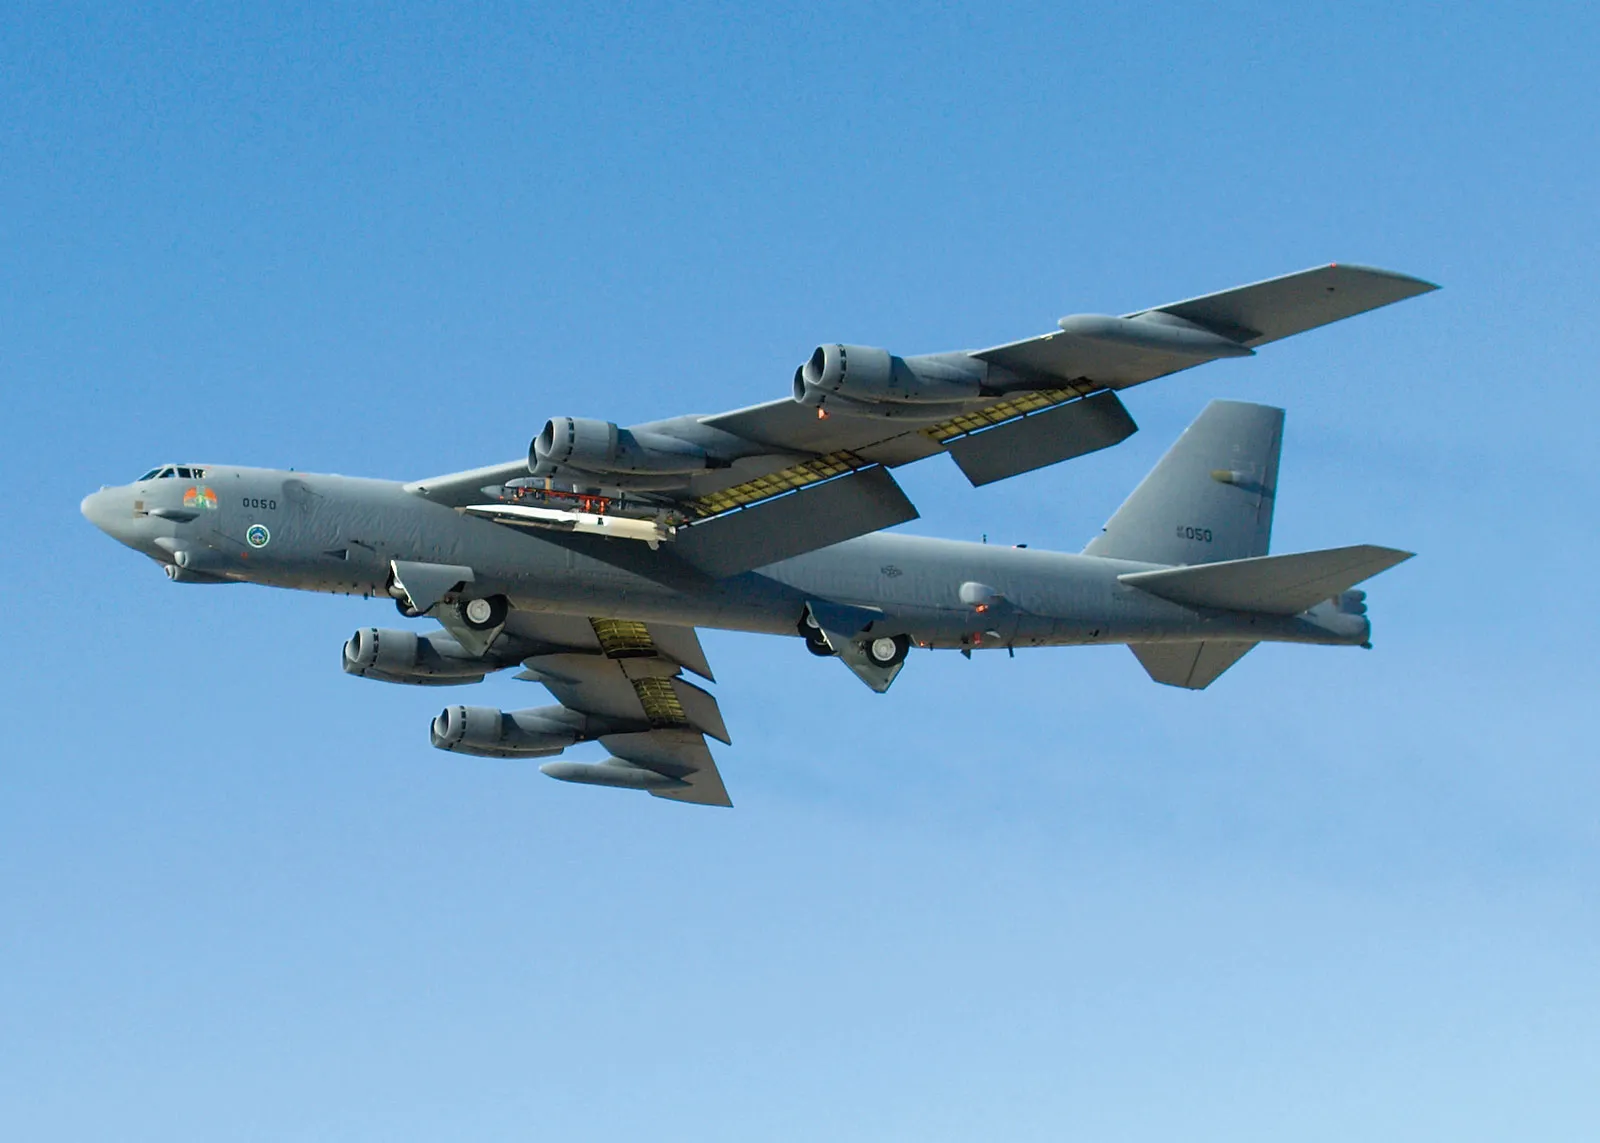 Un bombardier nucléaire américain B-52H a de nouveau volé à 15 km de la Russie et a effectué une manœuvre brusque à 170 km de Saint-Pétersbourg.